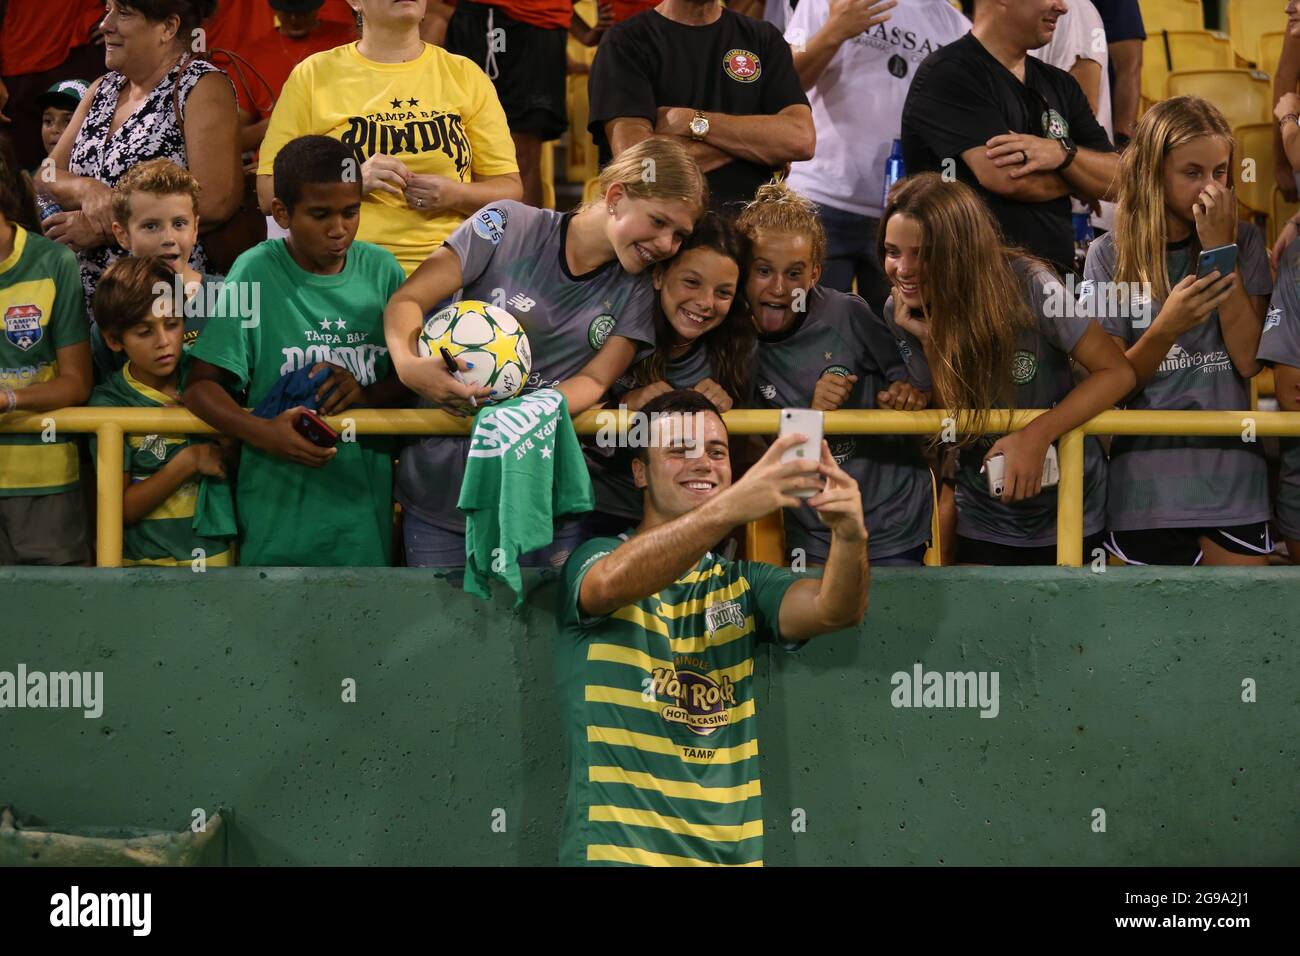 St. Petersburg, FL USA; Tampa Bay est un milieu de terrain, Jordan Doherty (22), qui prend un selfie avec quelques jeunes fans après un match de football USL contre les bruyants Banque D'Images